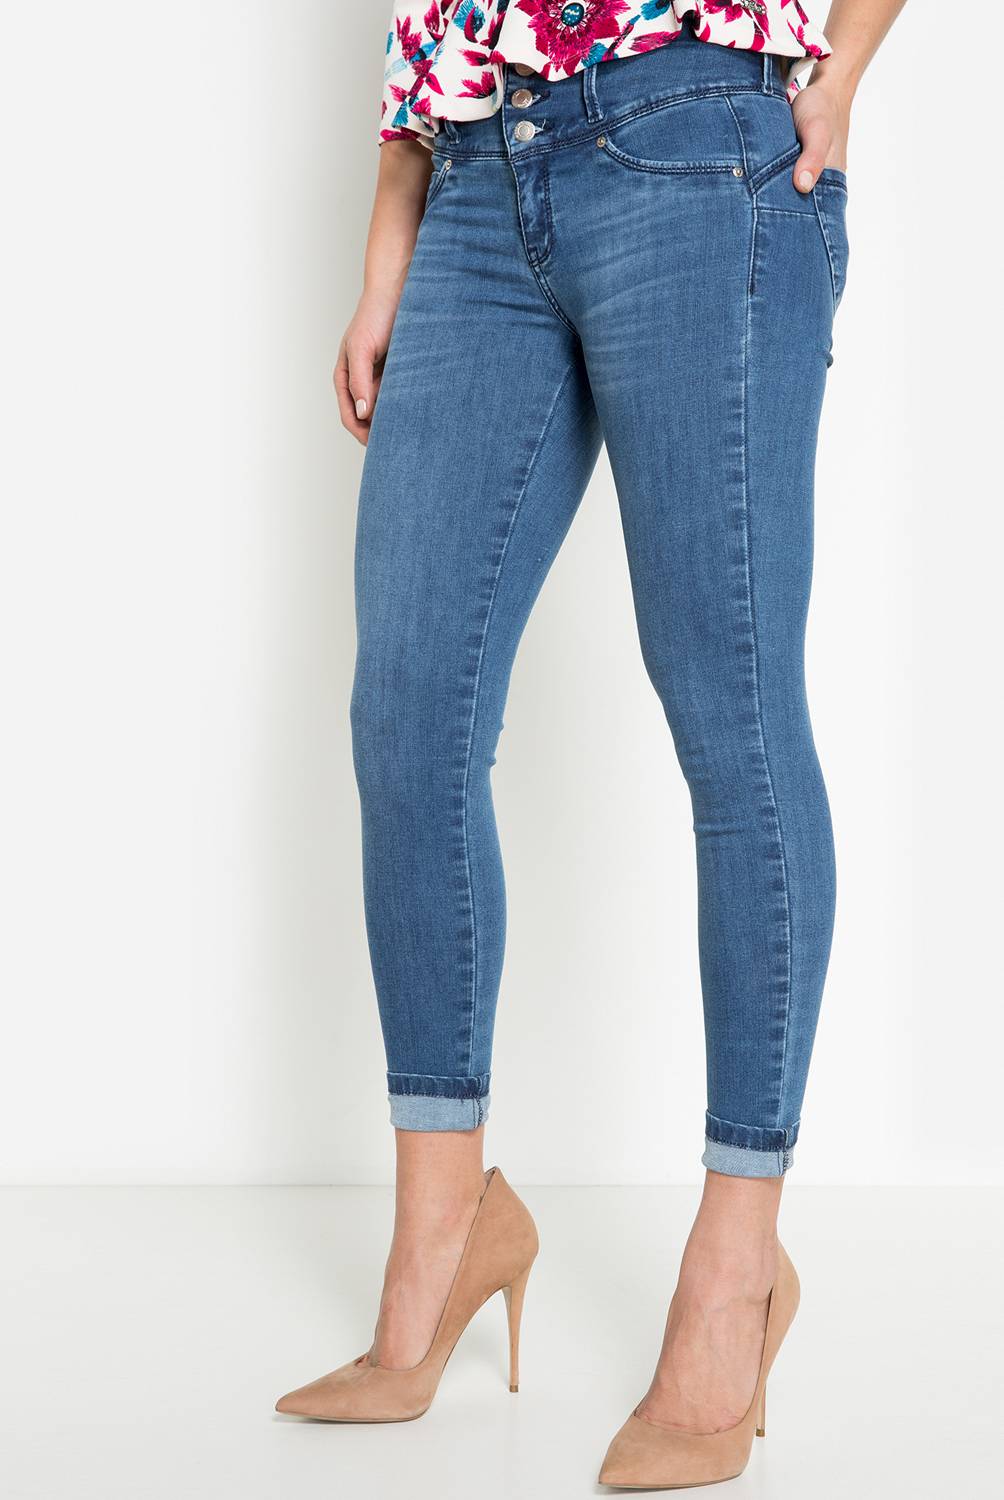 Mossimo - Jeans de Algodón Mujer